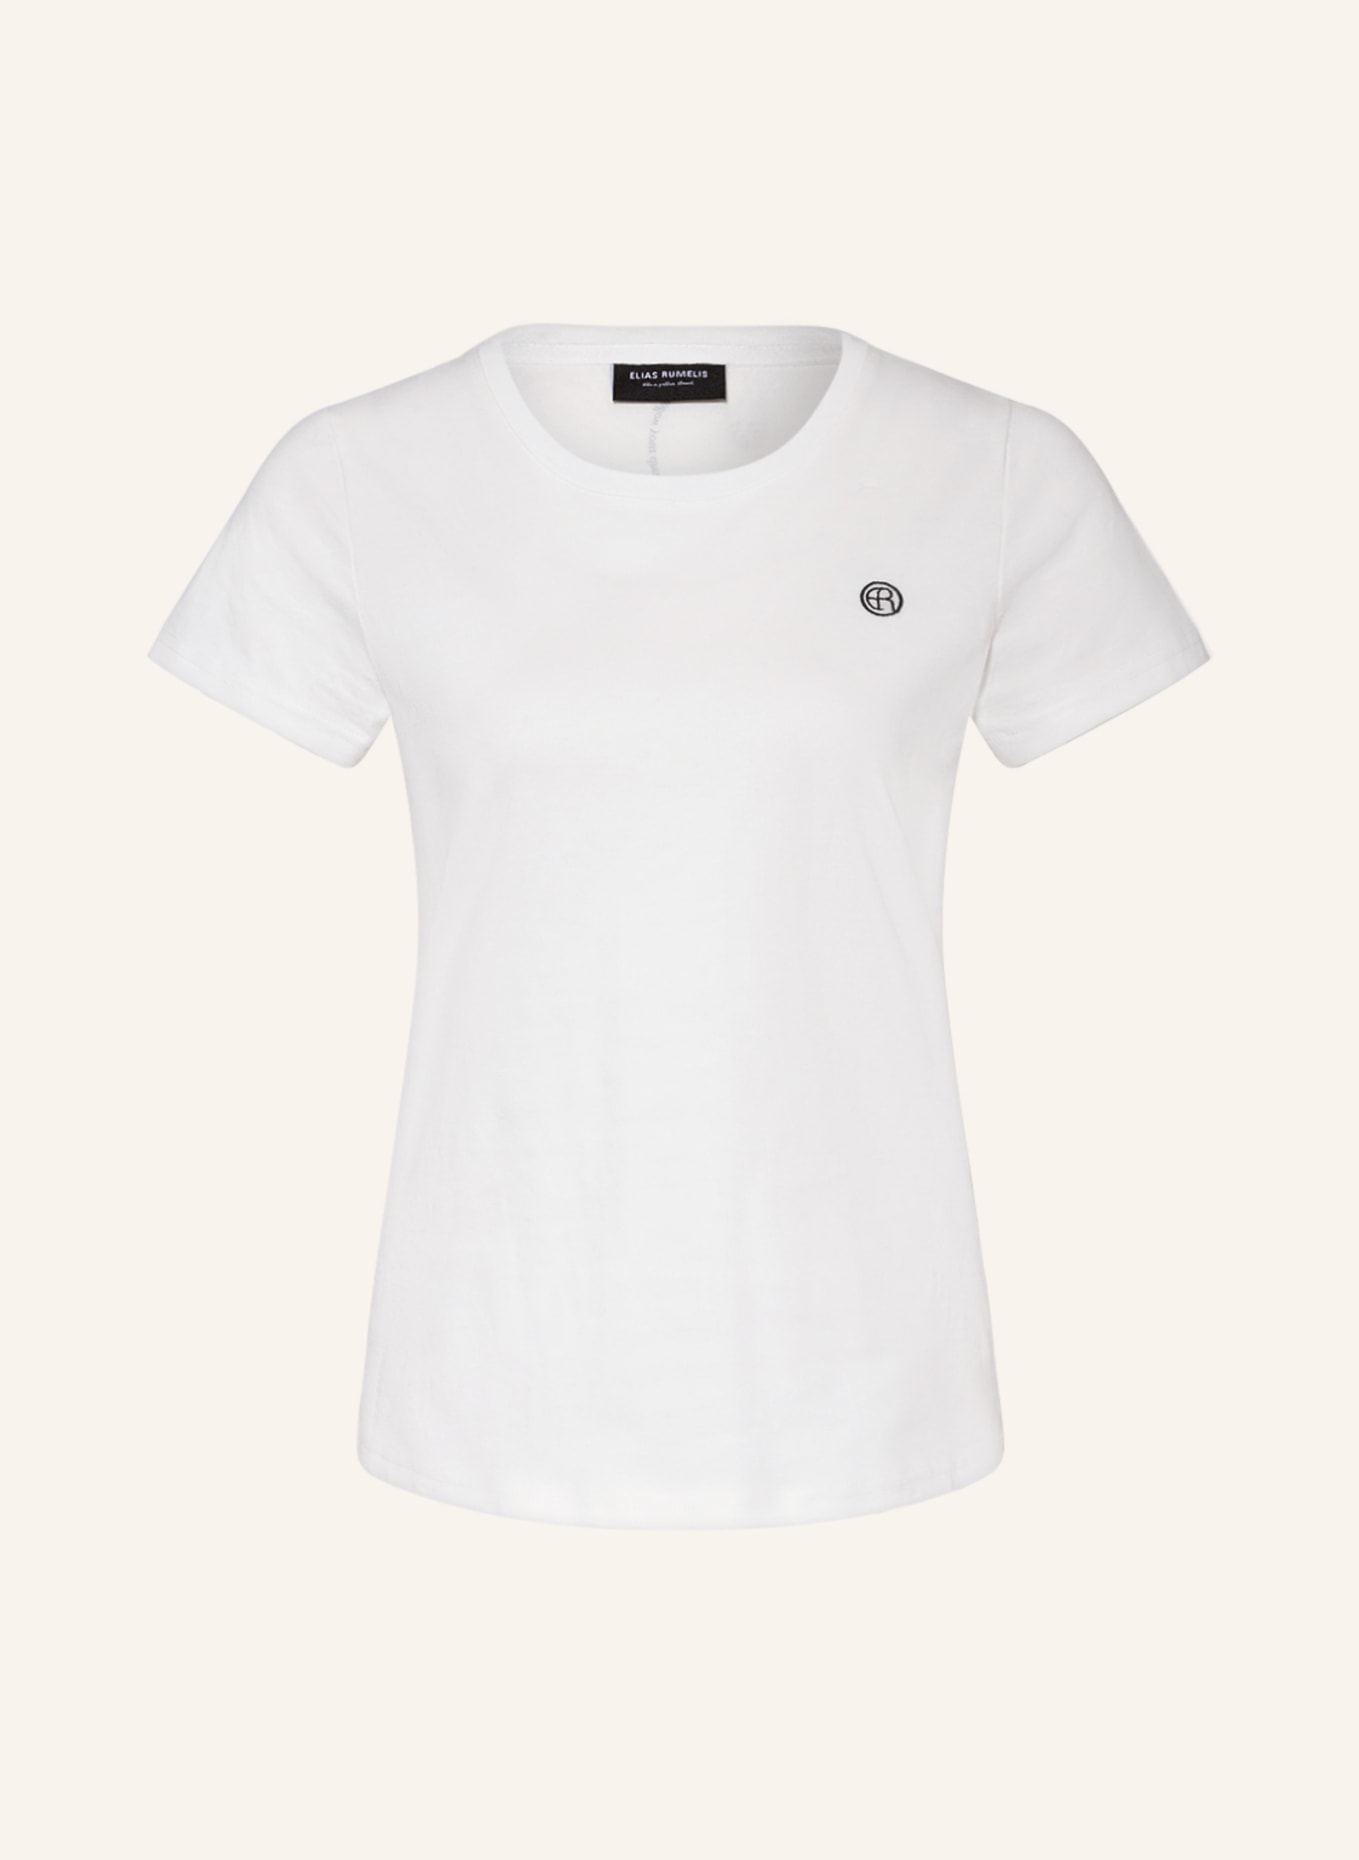 ELIAS RUMELIS T-shirt ERASHLEY, Color: WHITE (Image 1)